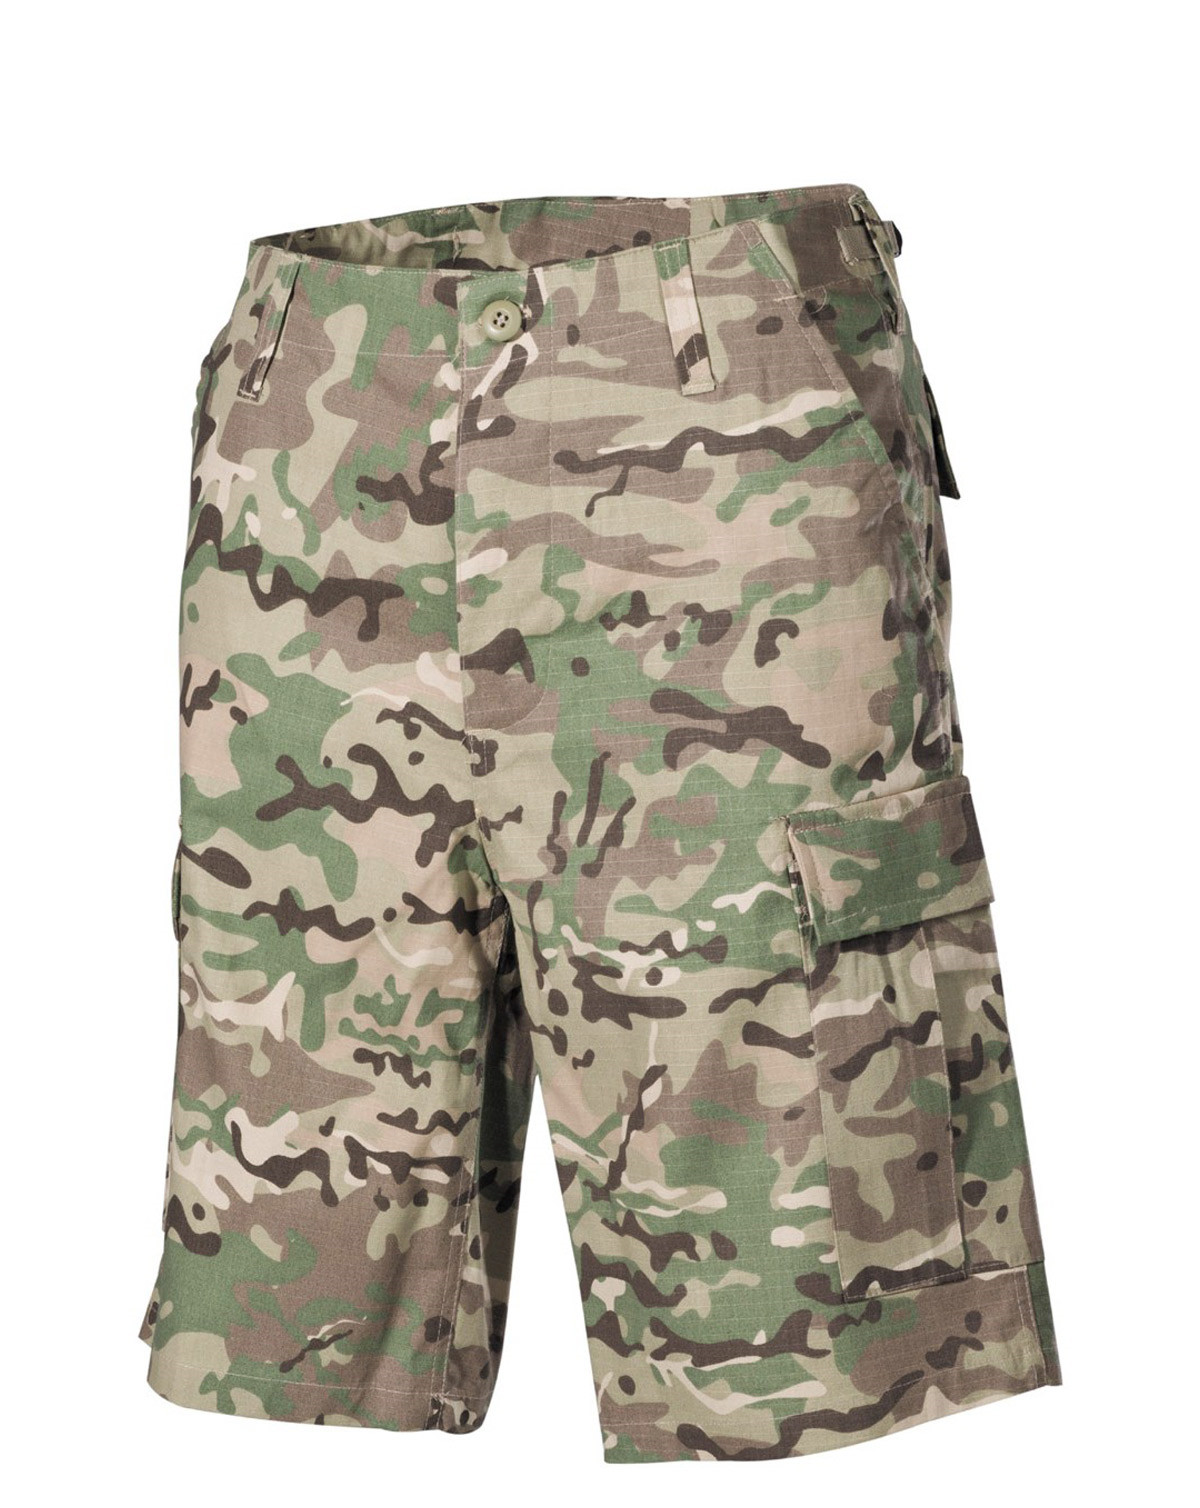 MFH U.S. BDU Bermuda shorts (Multi Camo, M)